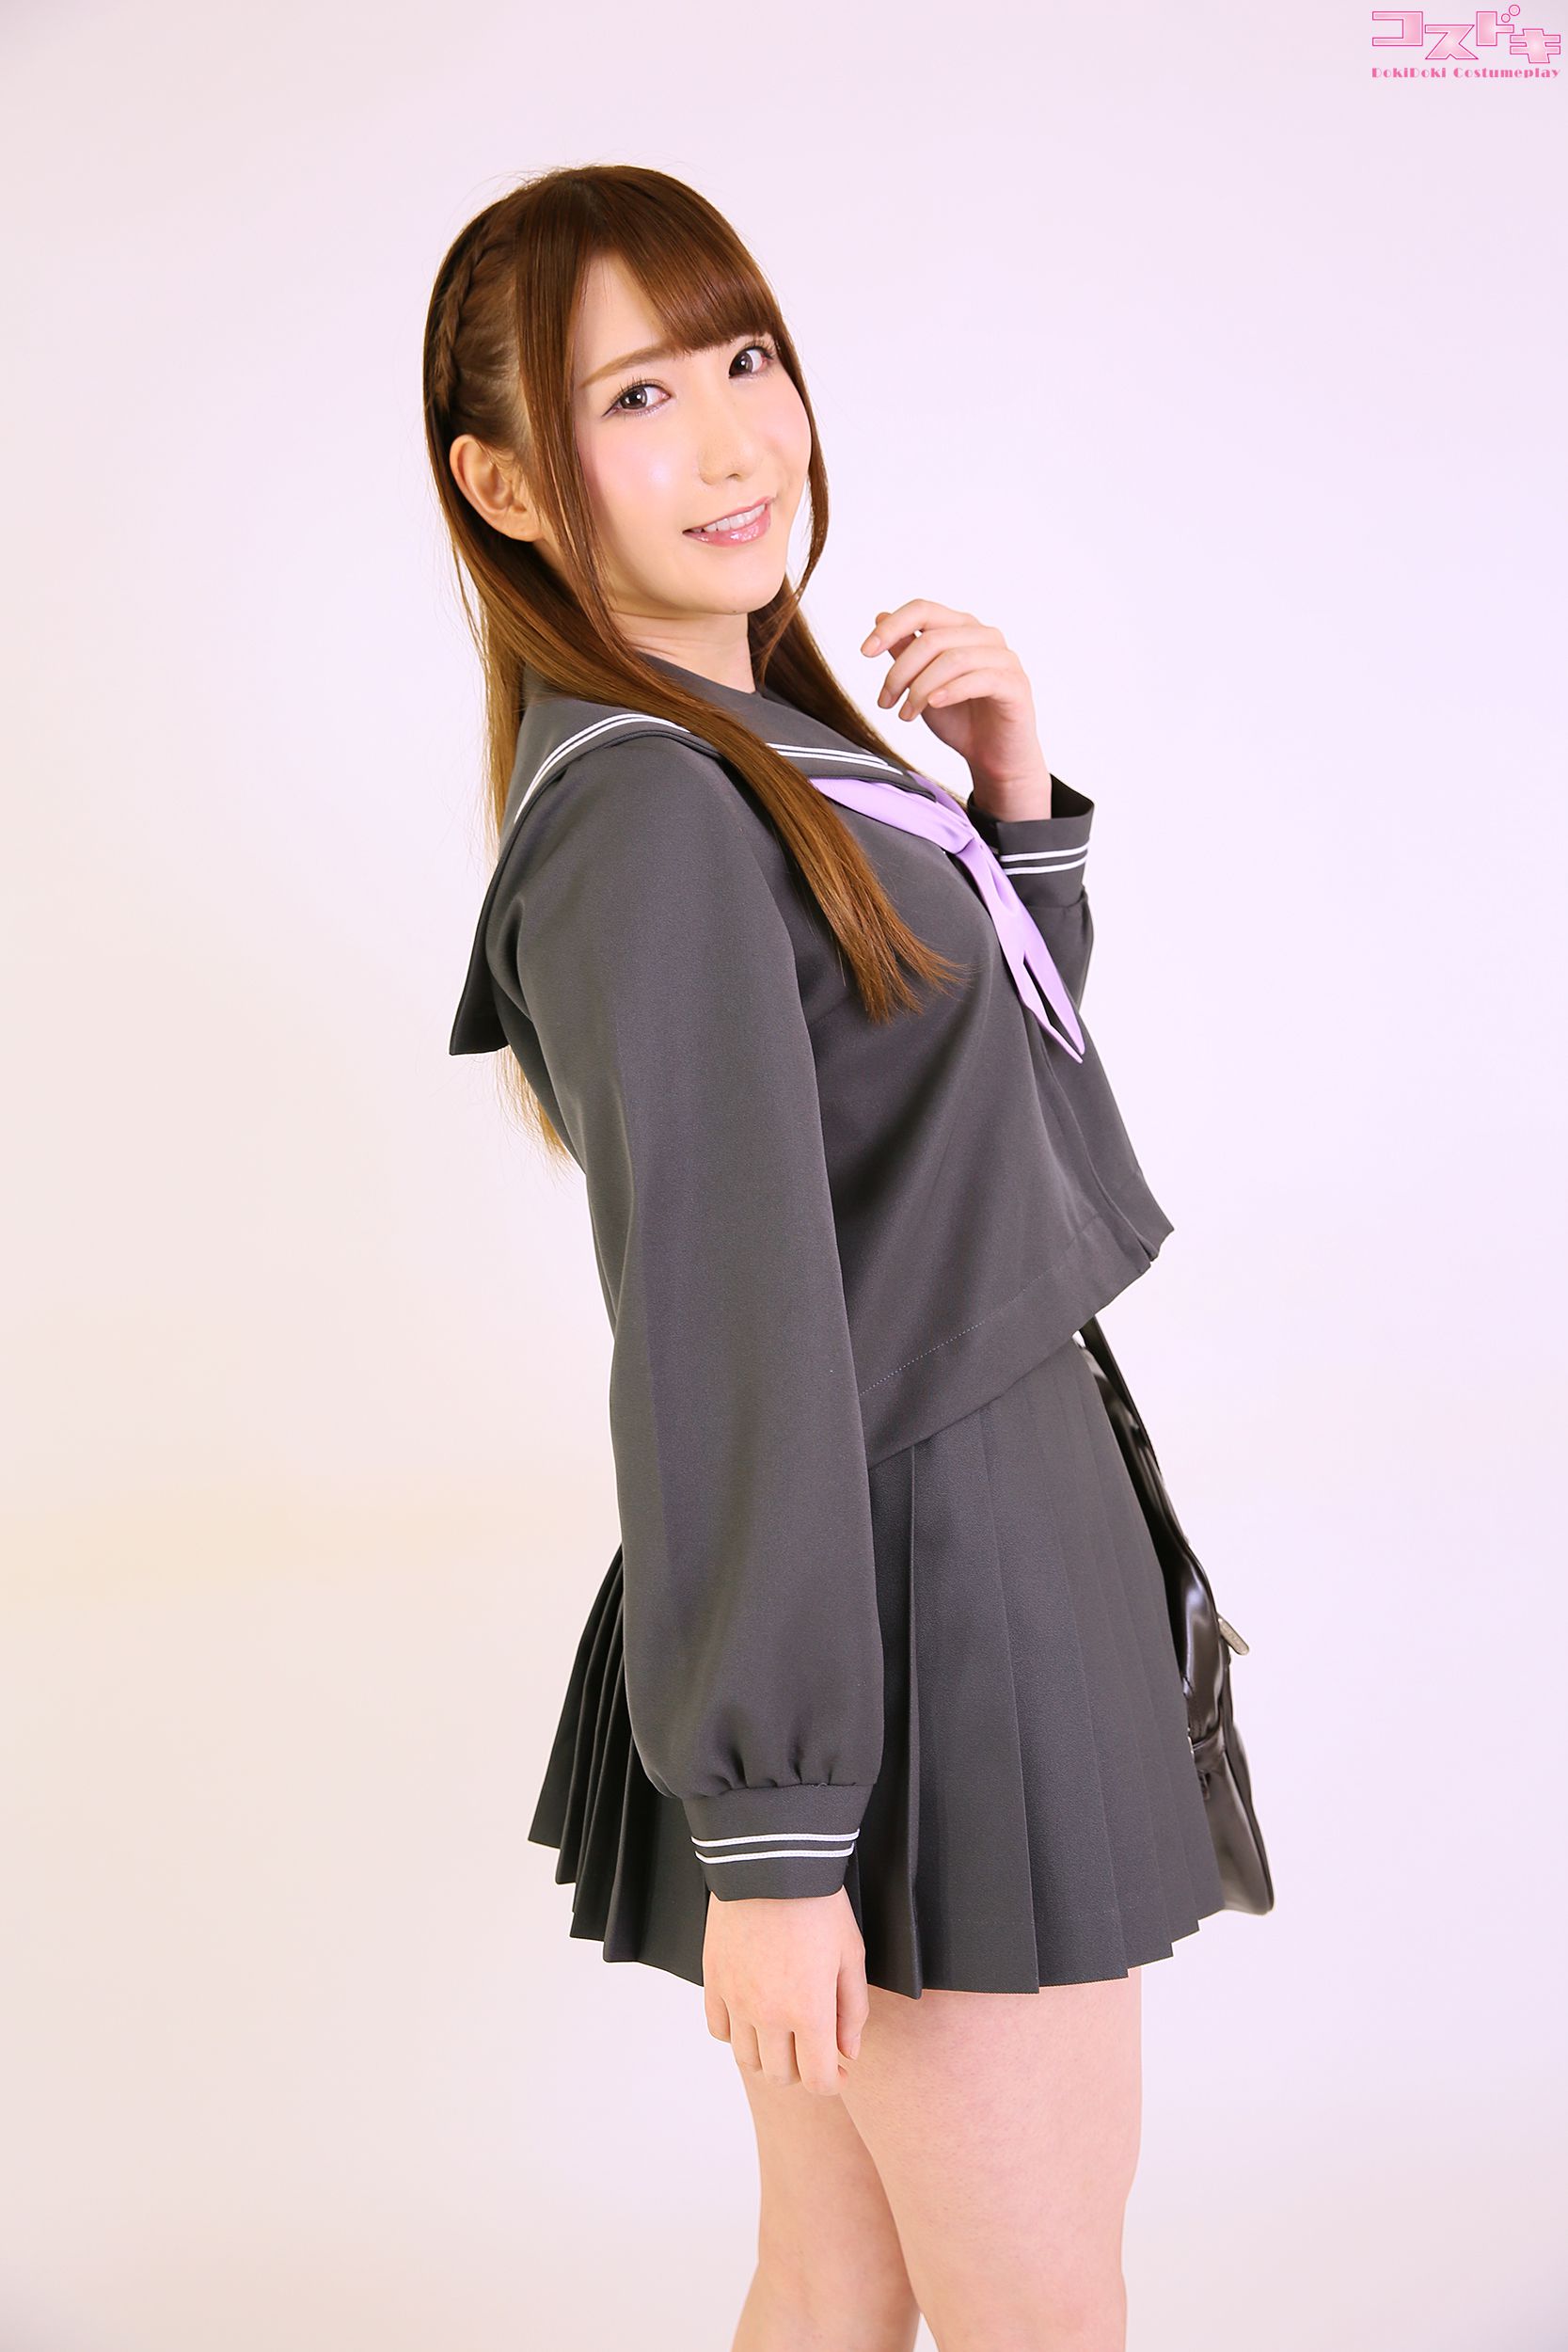 [Cosdoki]学生制服:星咲伶美(上村丽美)高品质私房写真在线浏览(35P)